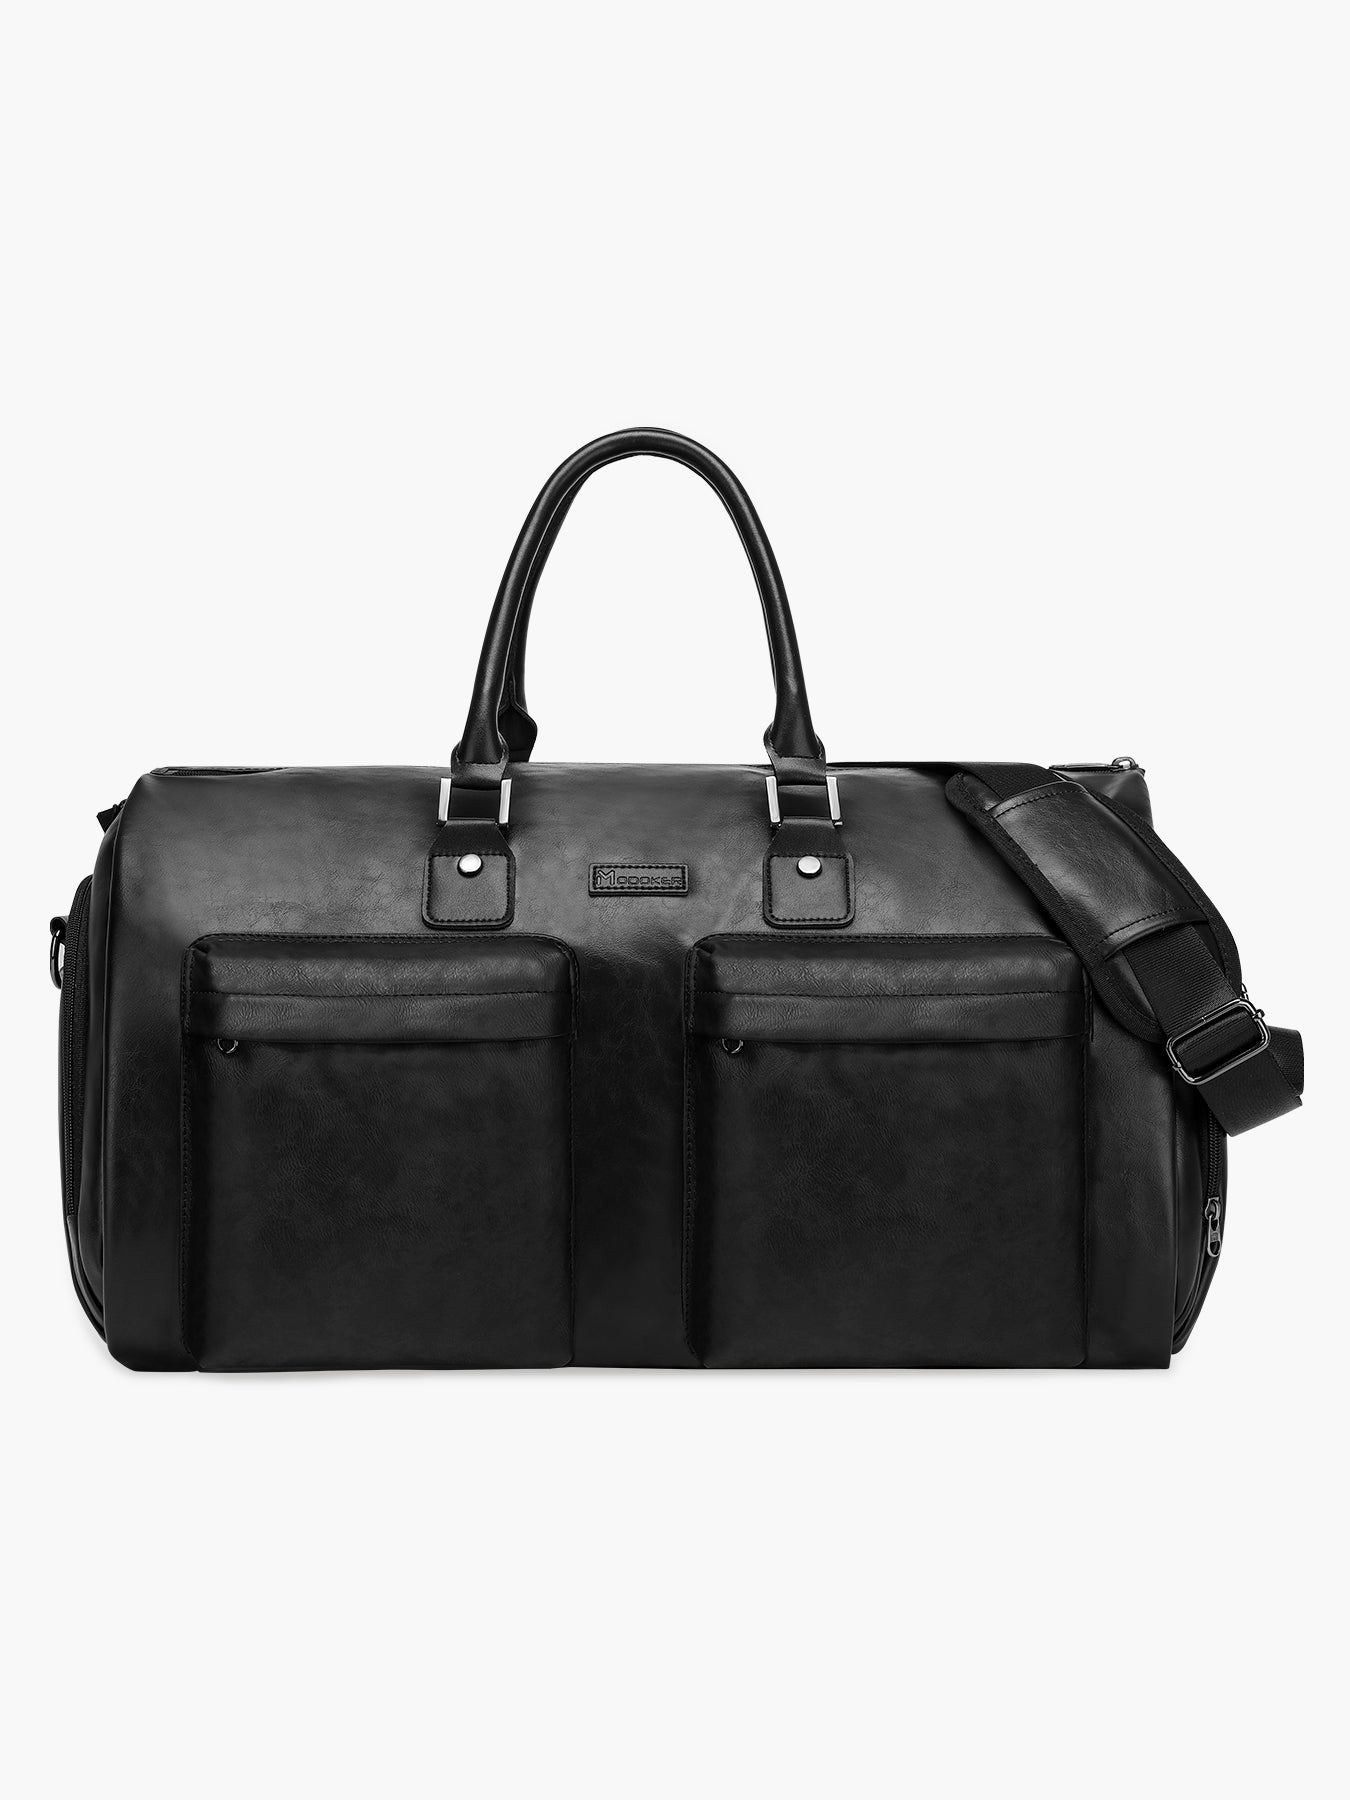 Convertible Leather Garment Bag for Travel-MODOKER-Black